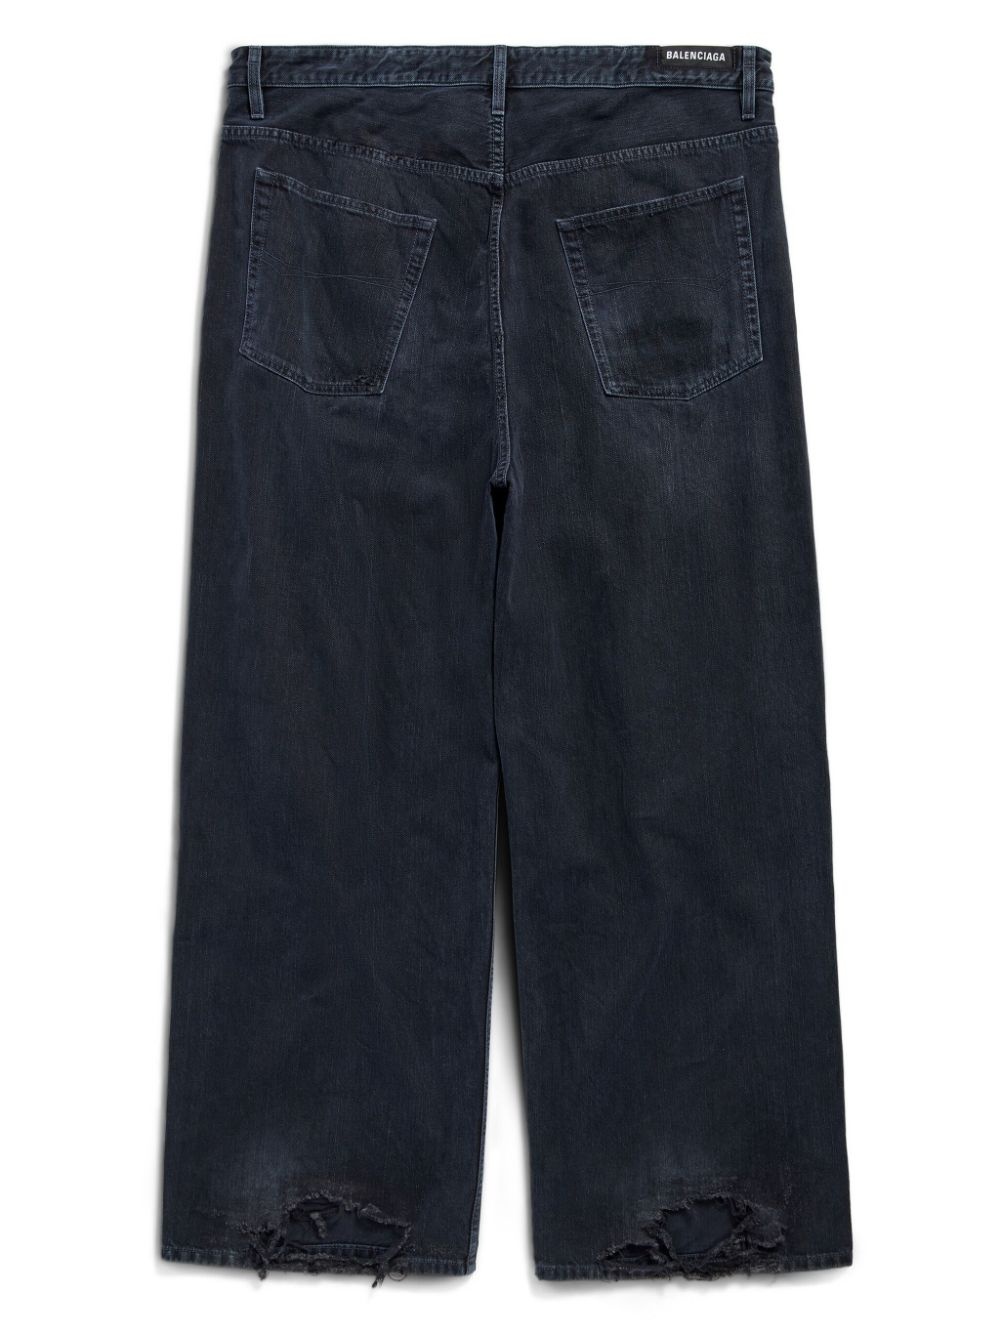 wide-leg jeans - 5